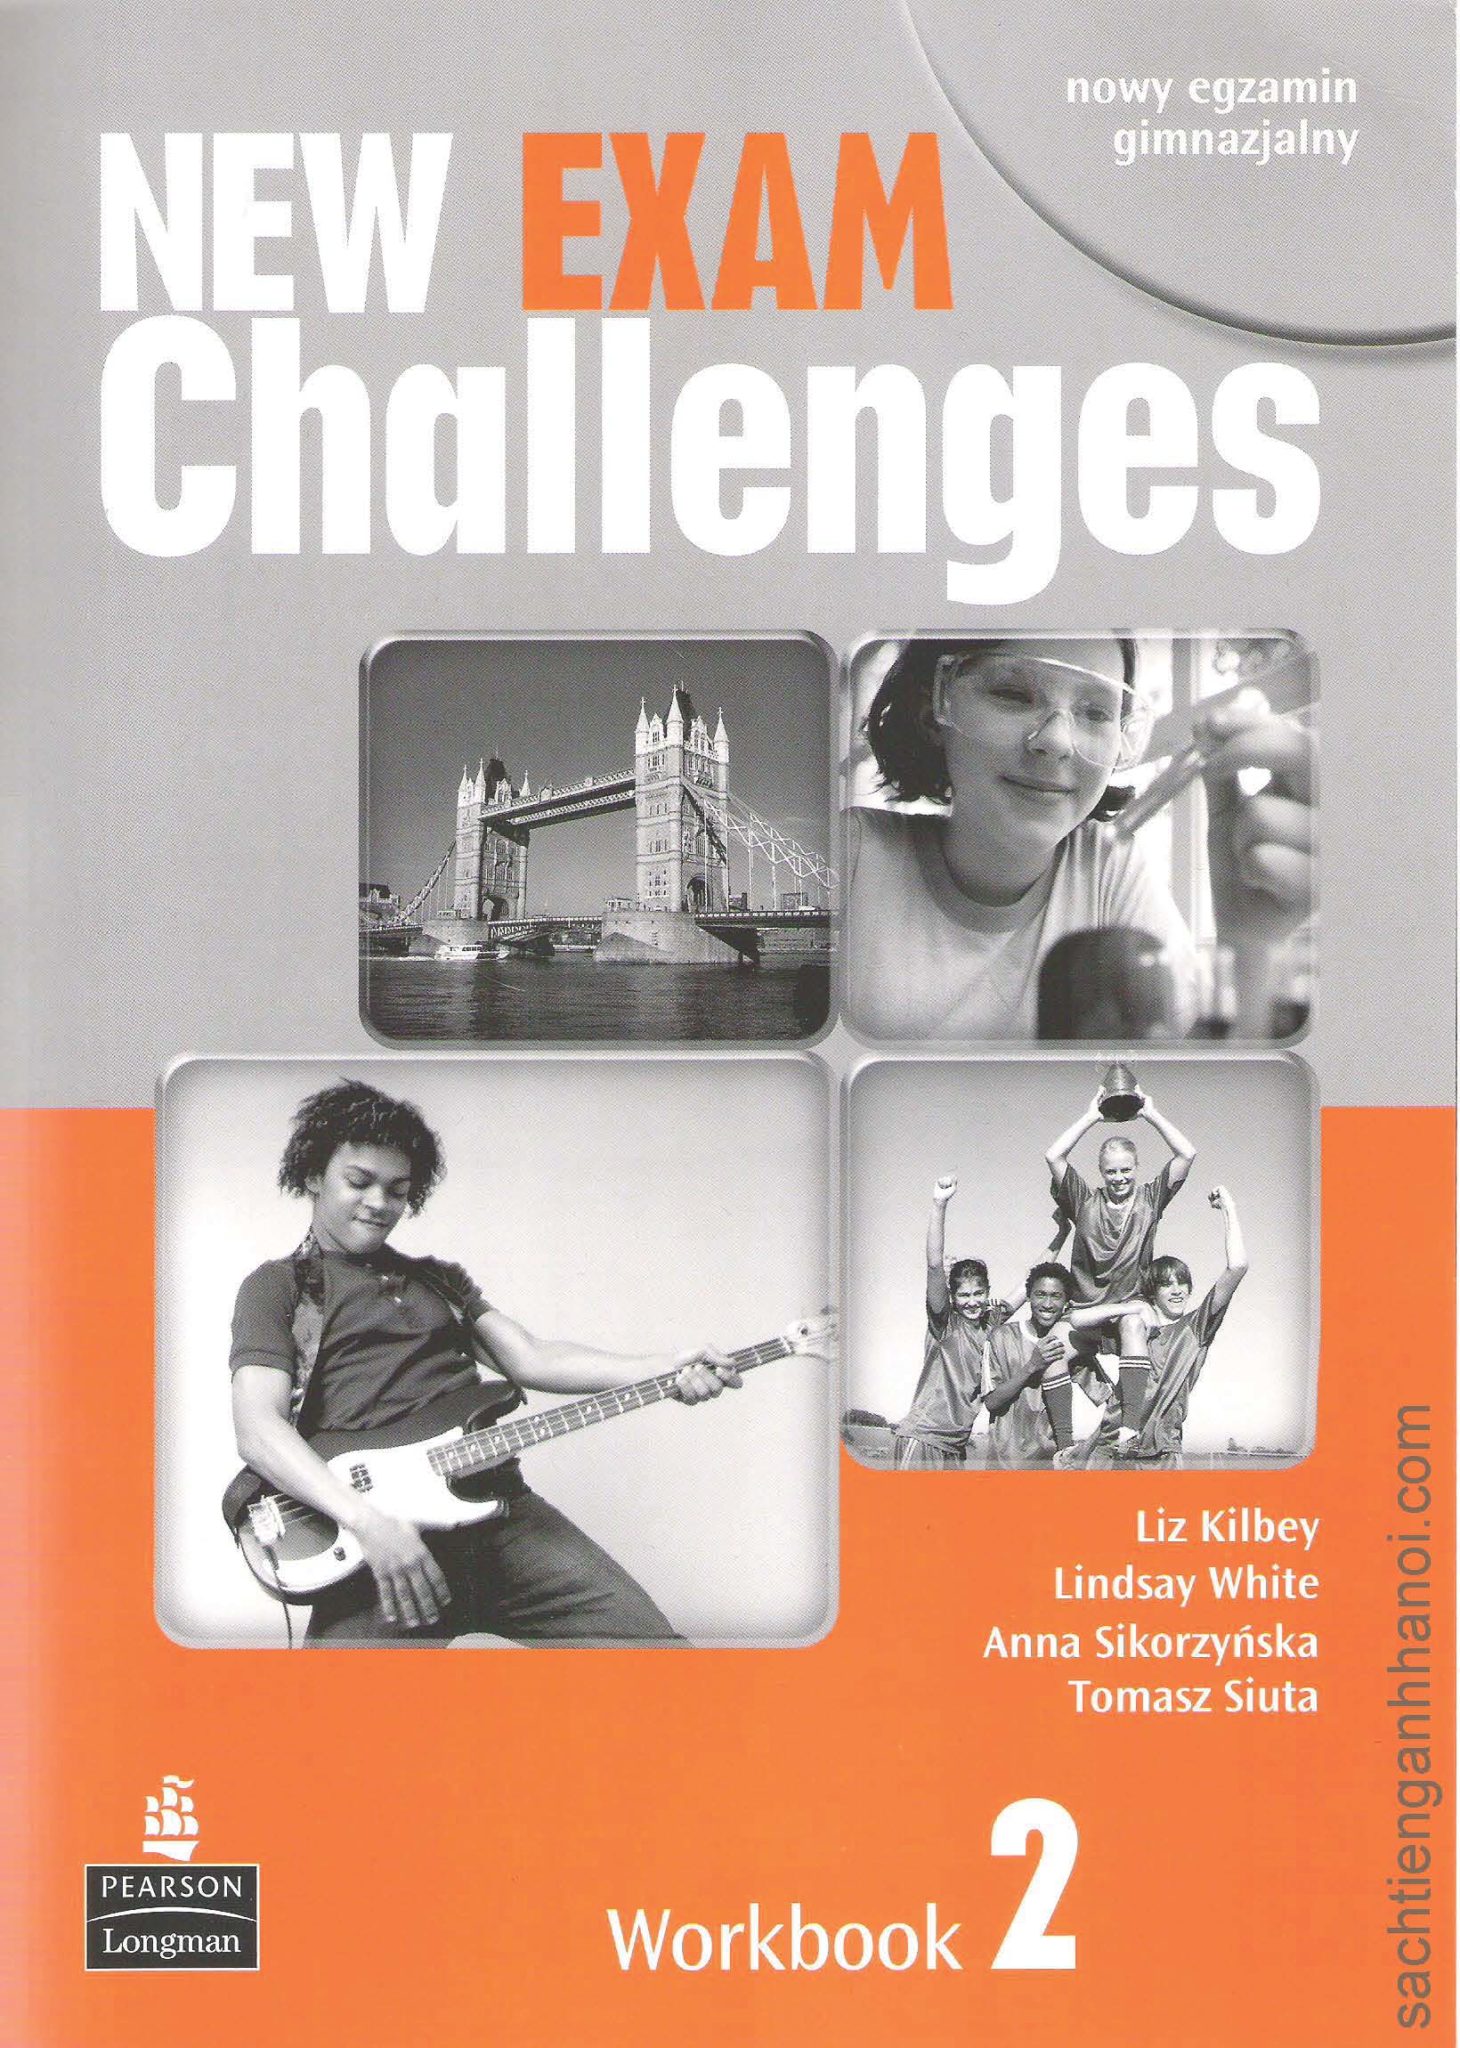 New Challenges 2 Workbook. New Challenges 3 Workbook. New Challenges 1 Workbook. New Challenges. New challenges 3